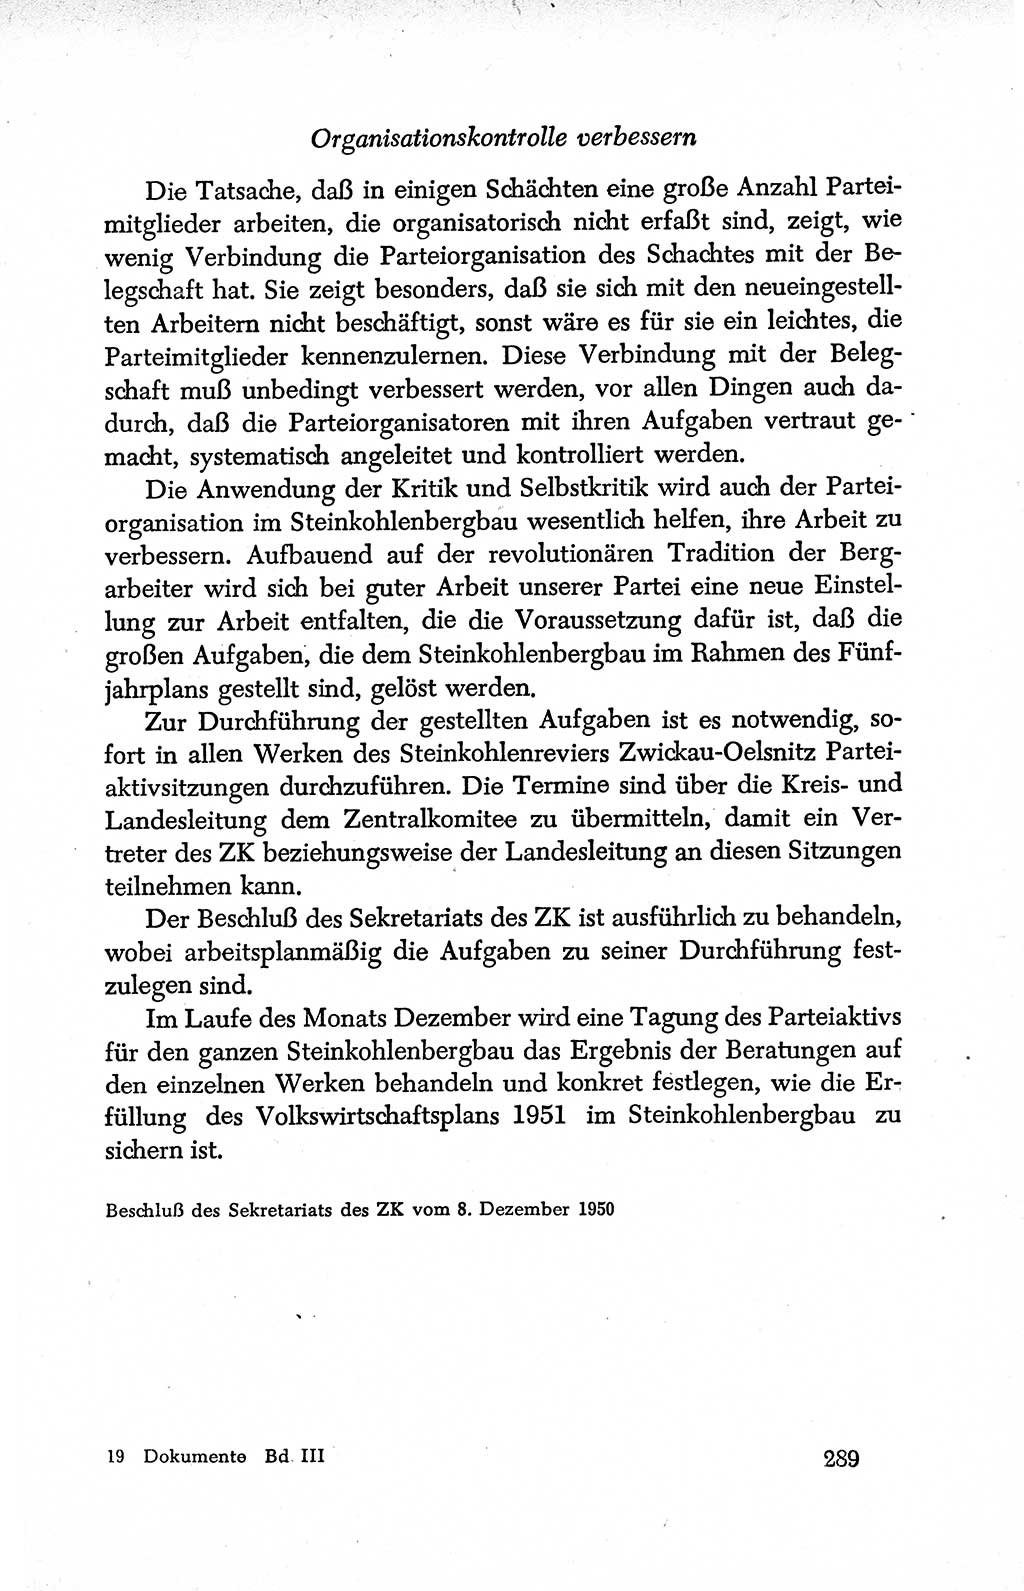 Dokumente der Sozialistischen Einheitspartei Deutschlands (SED) [Deutsche Demokratische Republik (DDR)] 1950-1952, Seite 289 (Dok. SED DDR 1950-1952, S. 289)